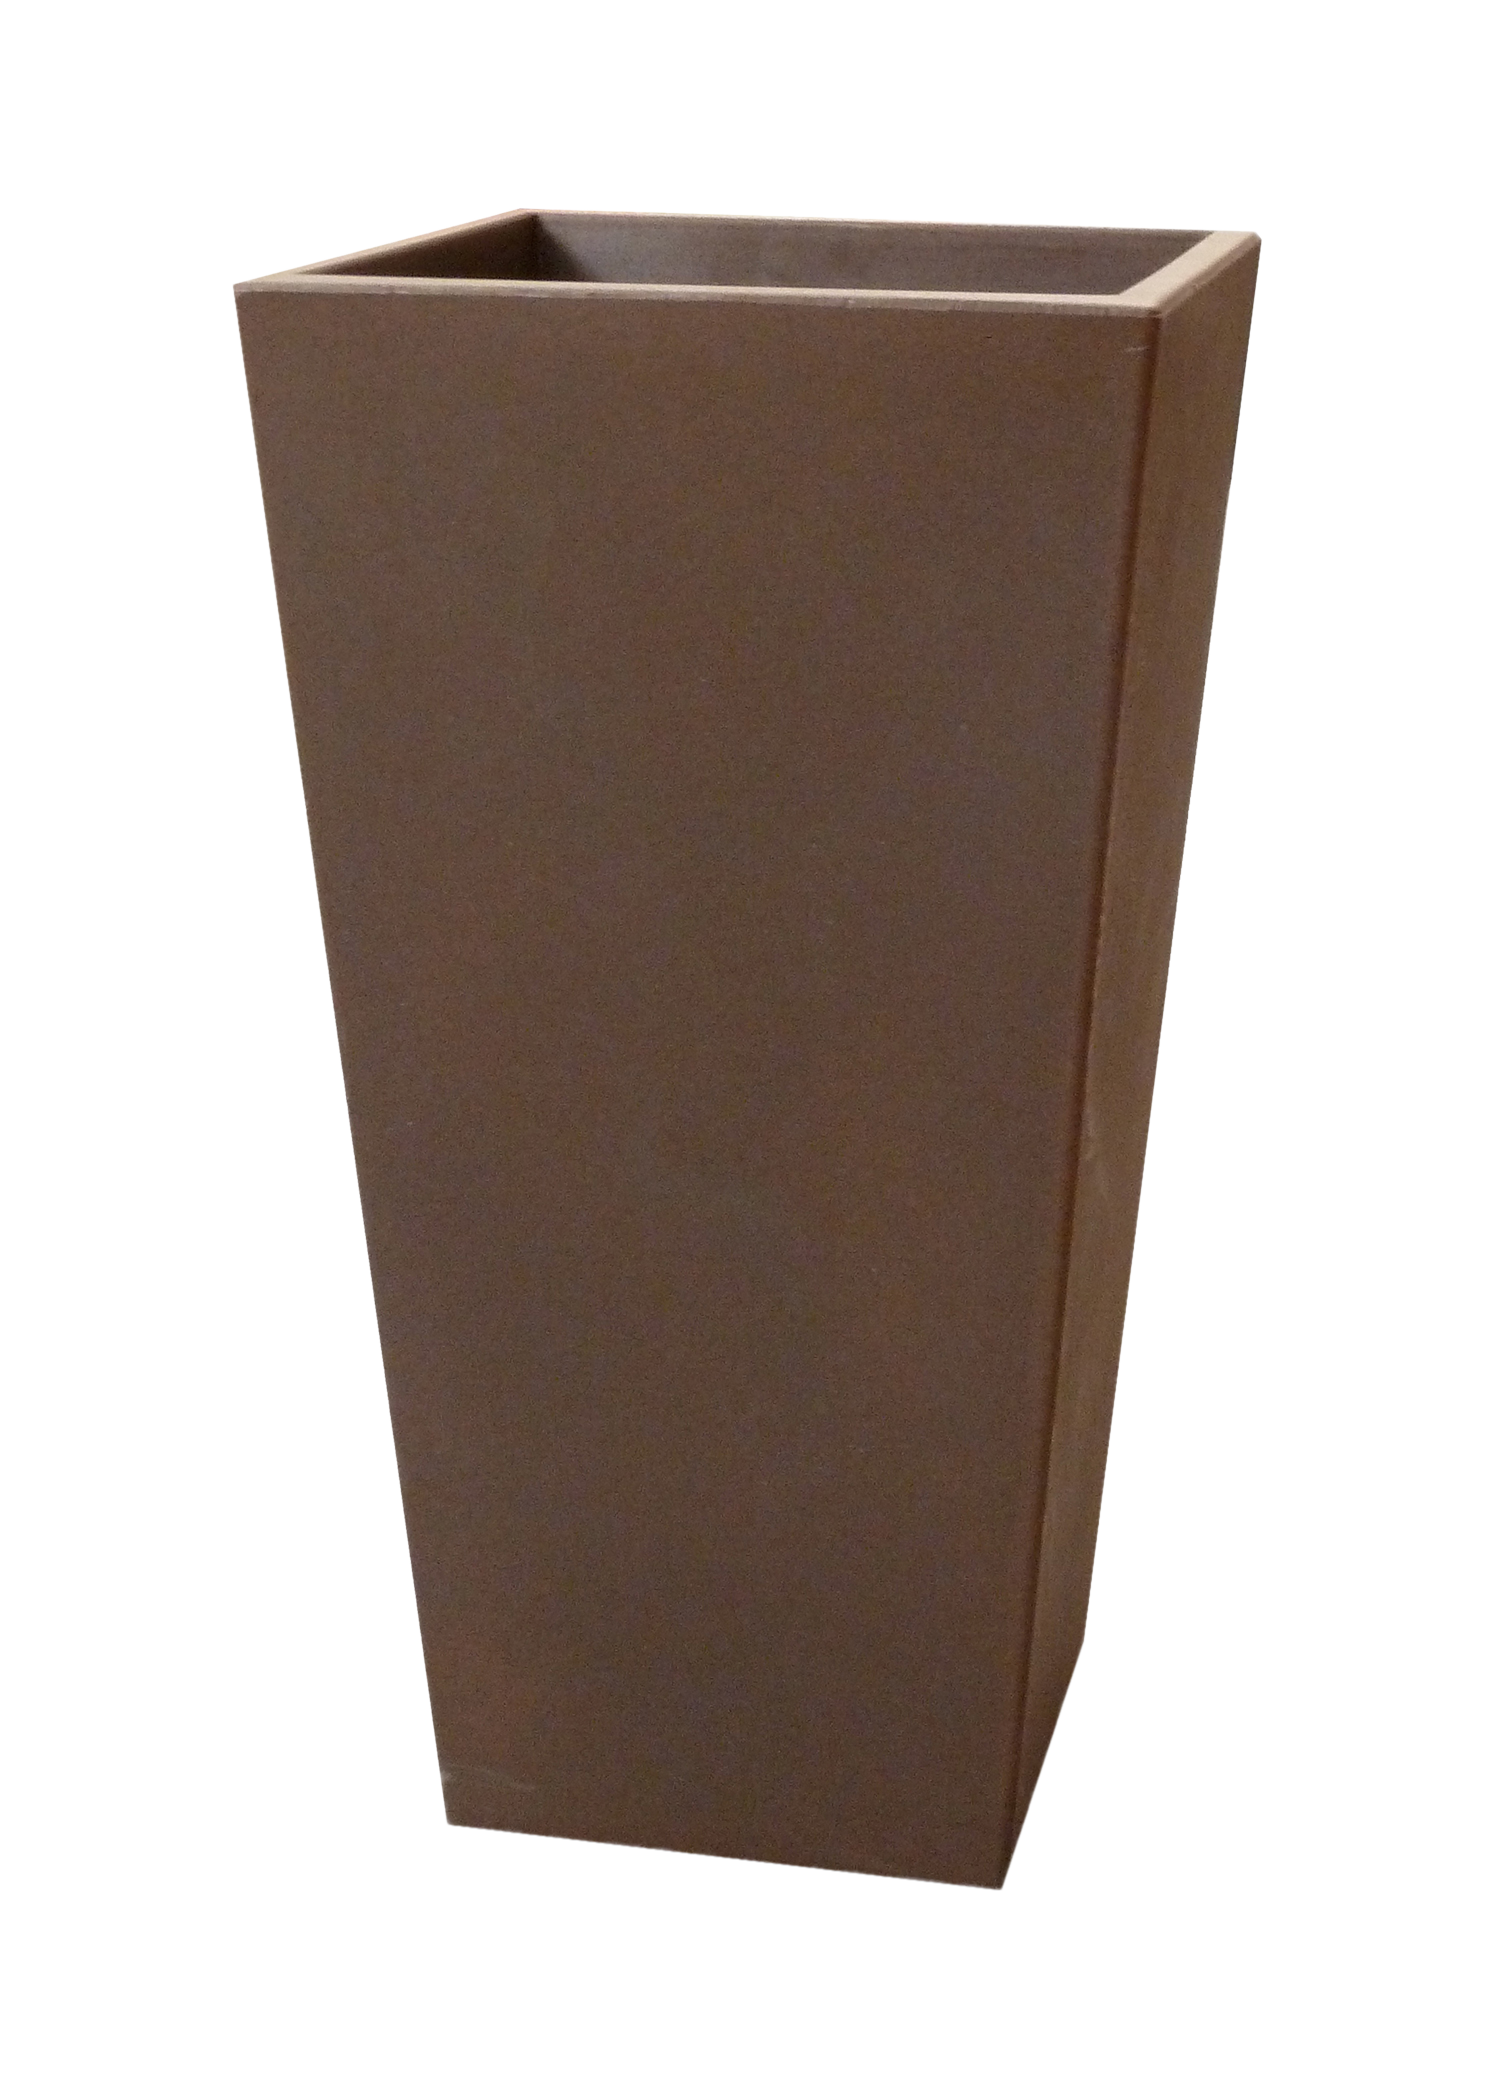 Maceta de polietileno de alta densidad newgarden marrón 26x58 cm